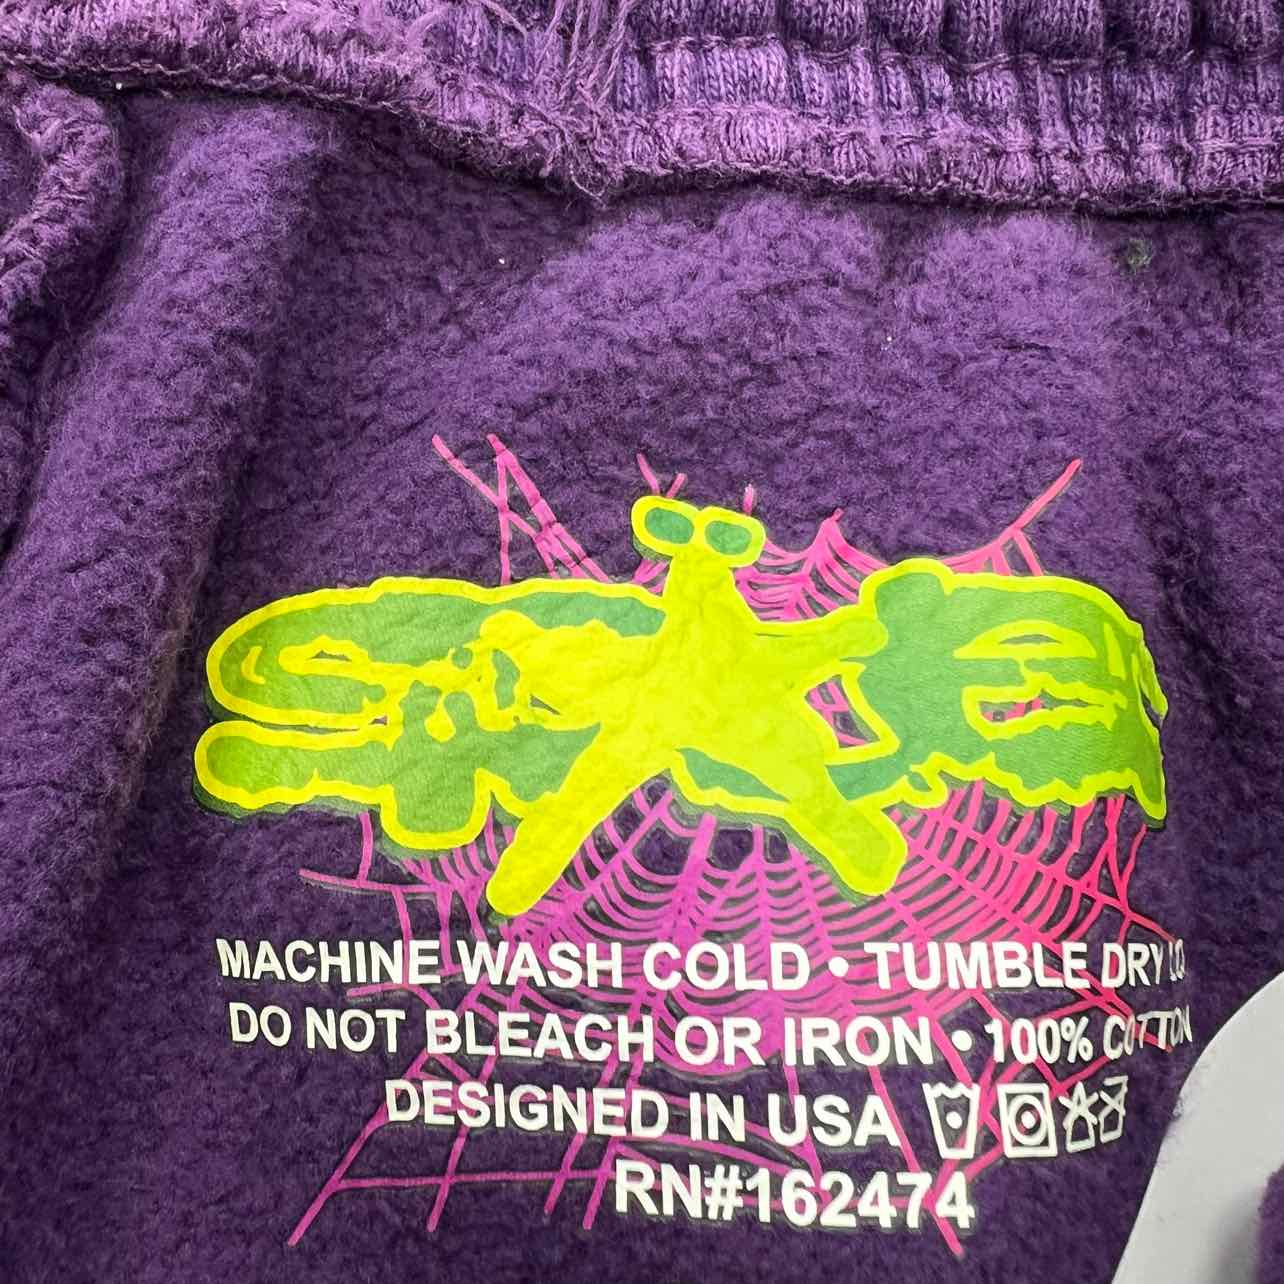 Sp5der Sweatpants "RHINESTONE" Purple New Size L